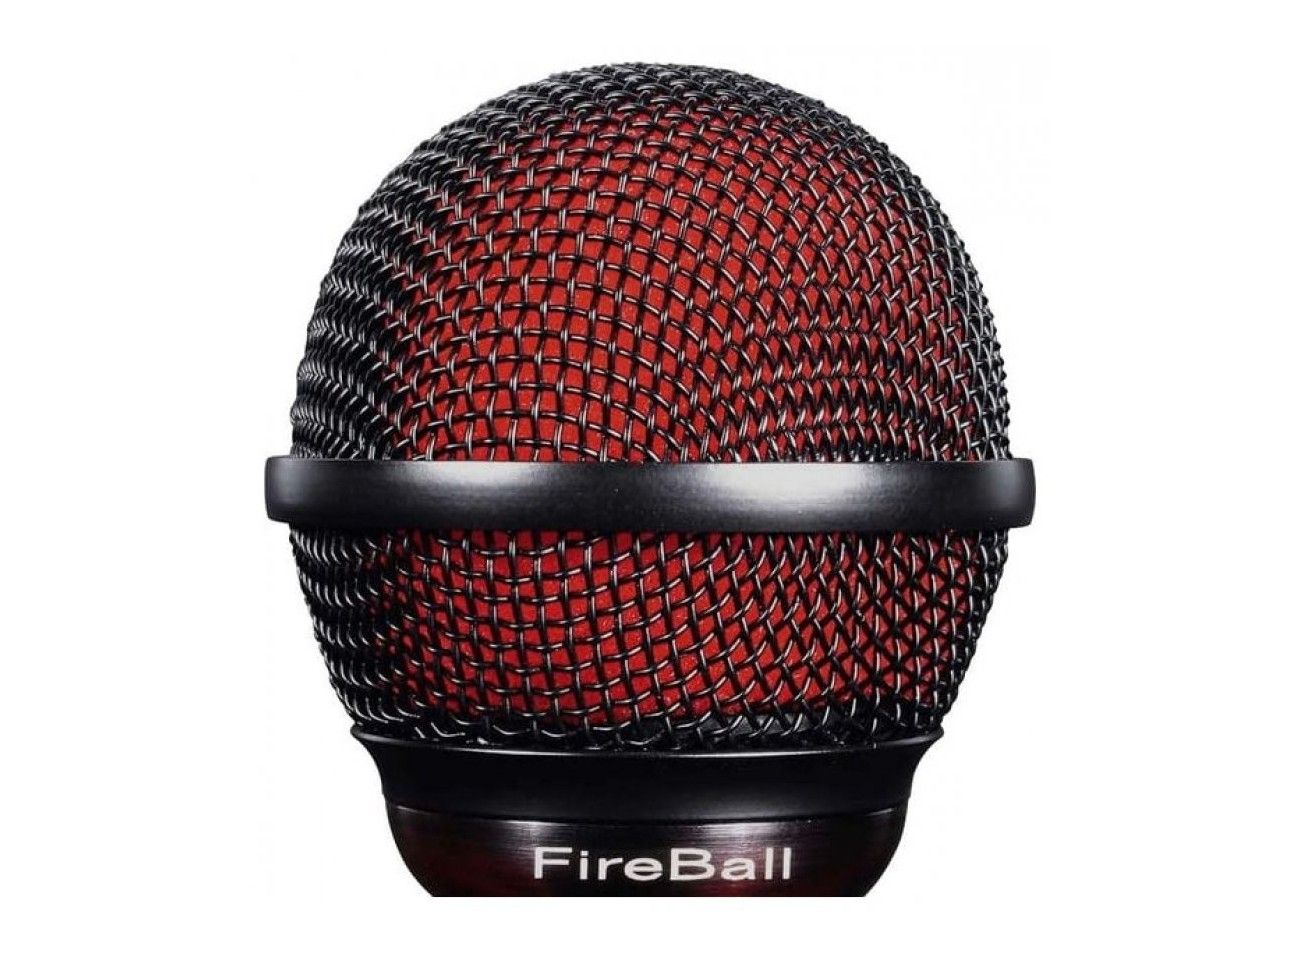 Audix Fireball